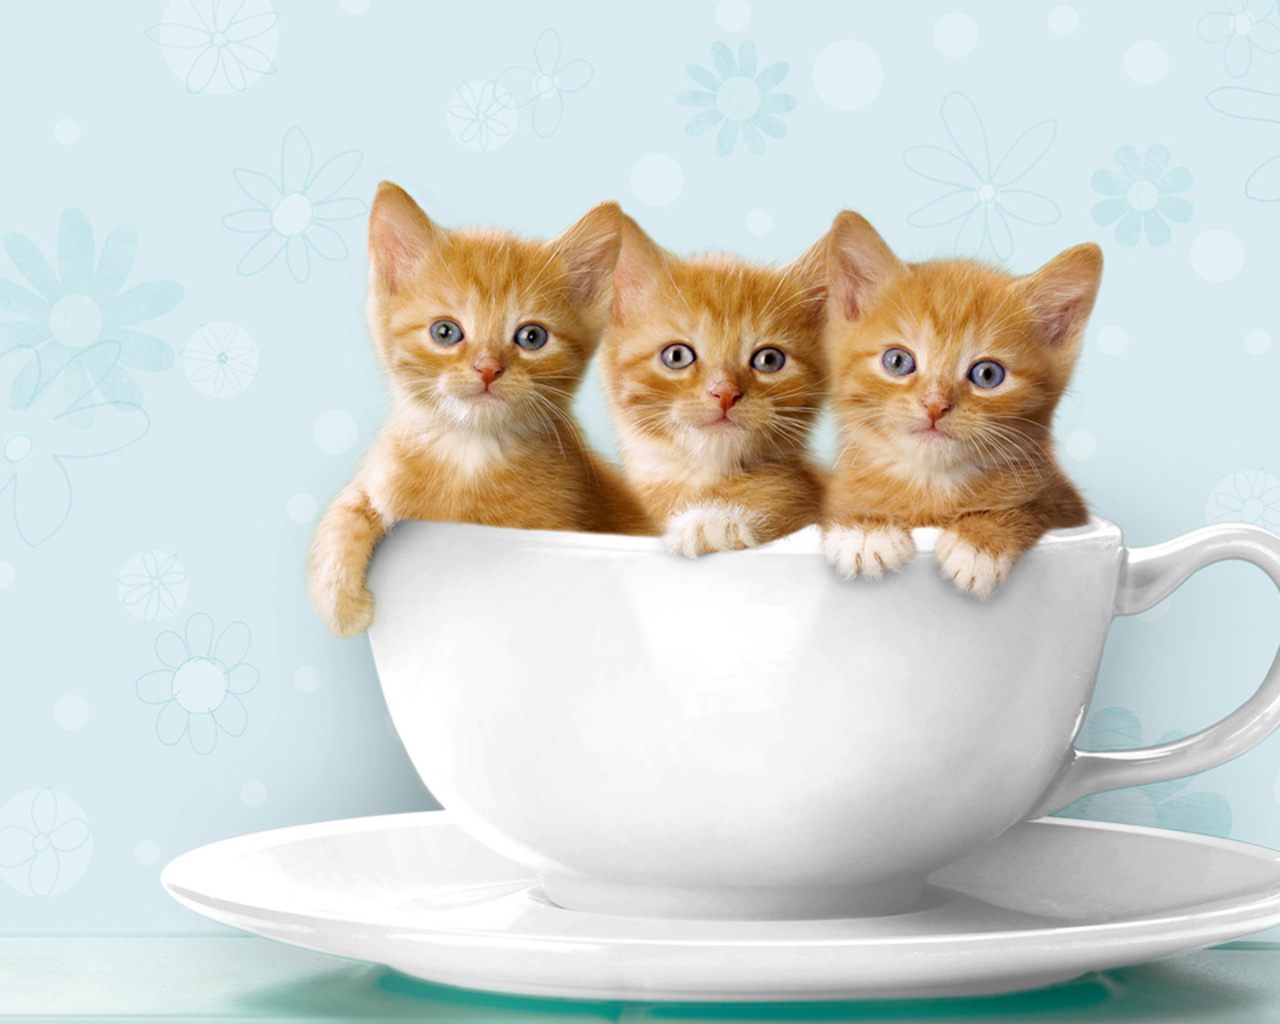 Wallpapers De Gatos - Kitties In A Cup - HD Wallpaper 